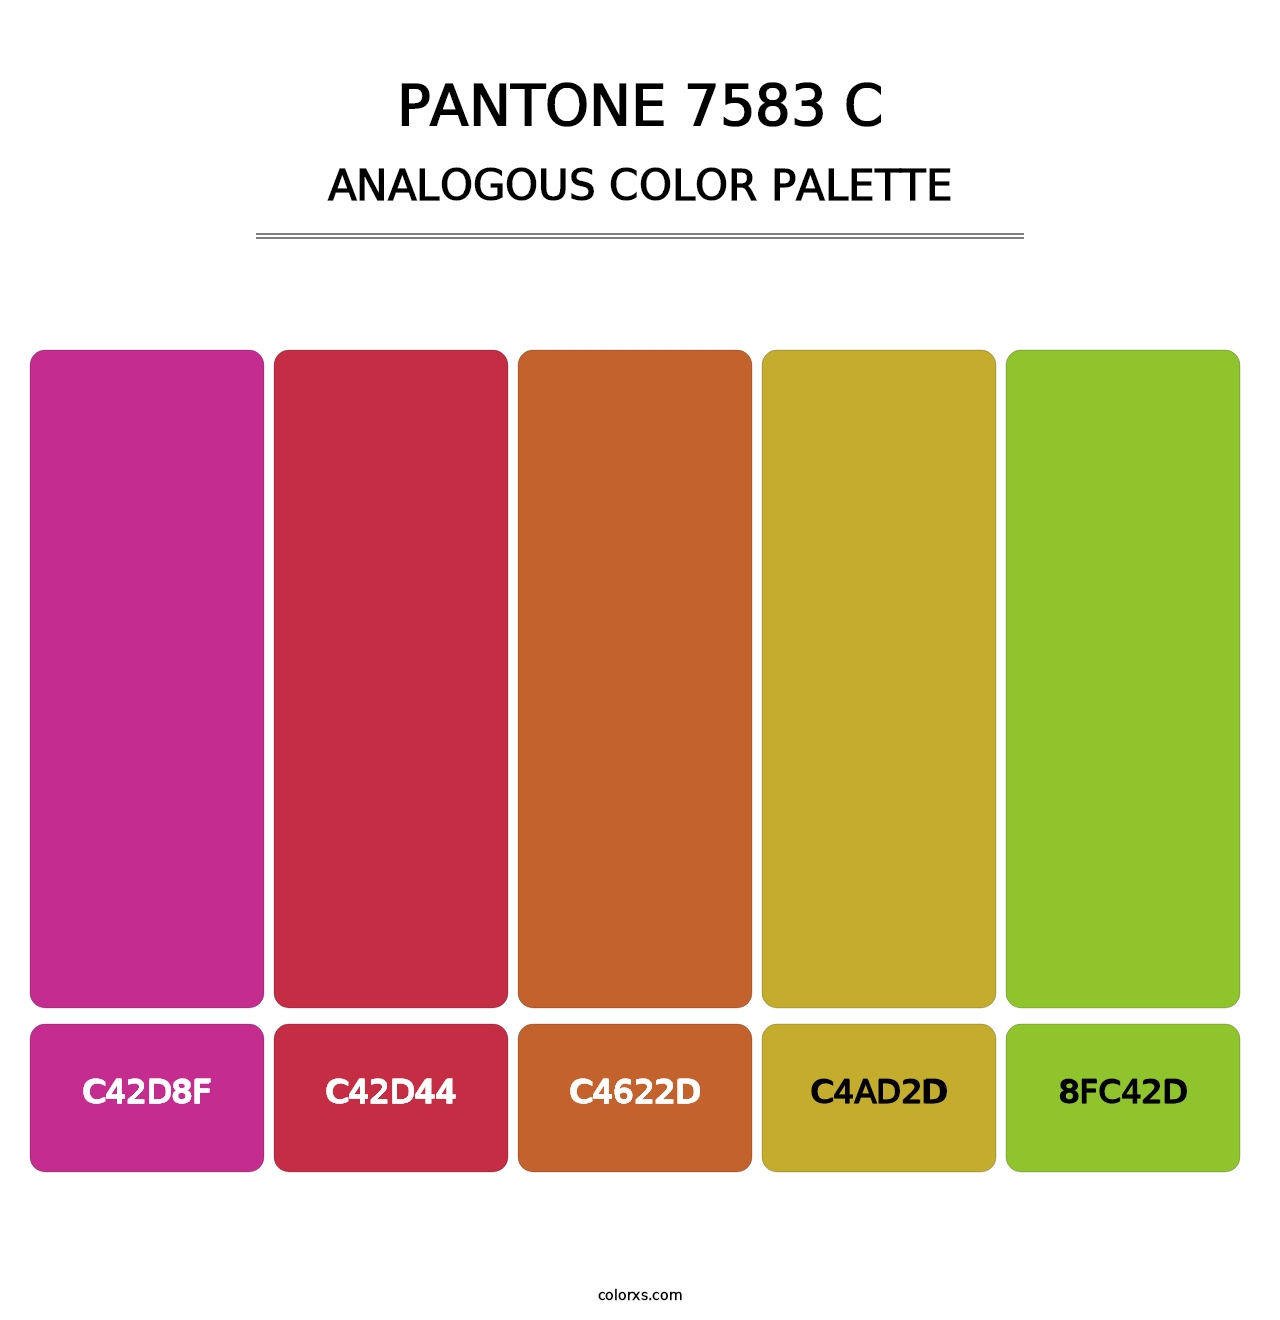 PANTONE 7583 C - Analogous Color Palette